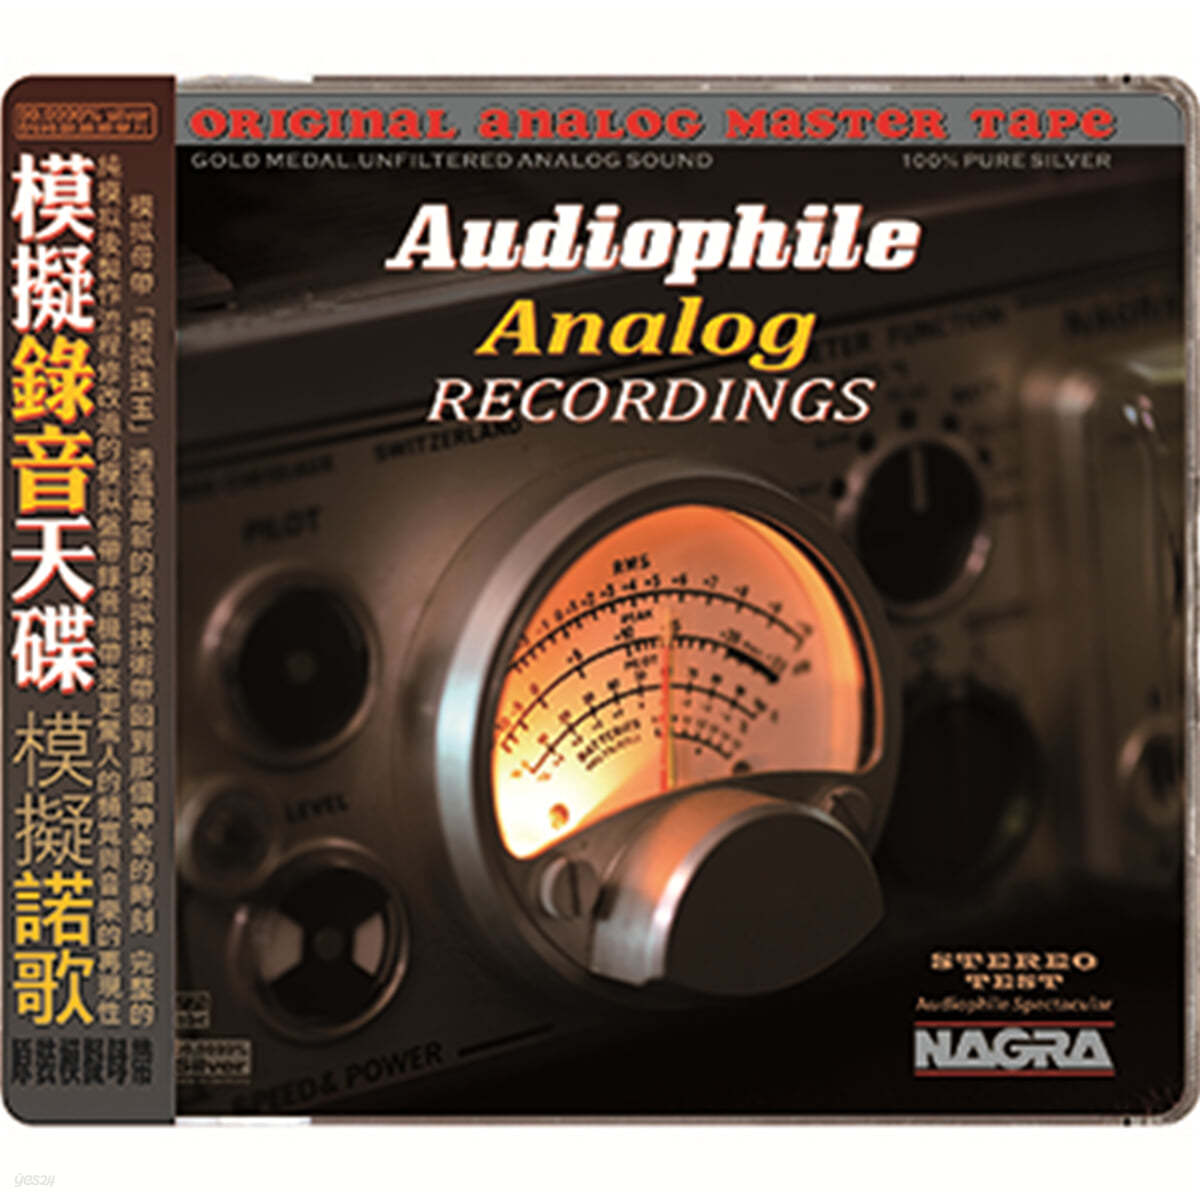 ABC레코드 레이블 레퍼런스 타이틀 모음 (Audiophile Analog Recordings) 